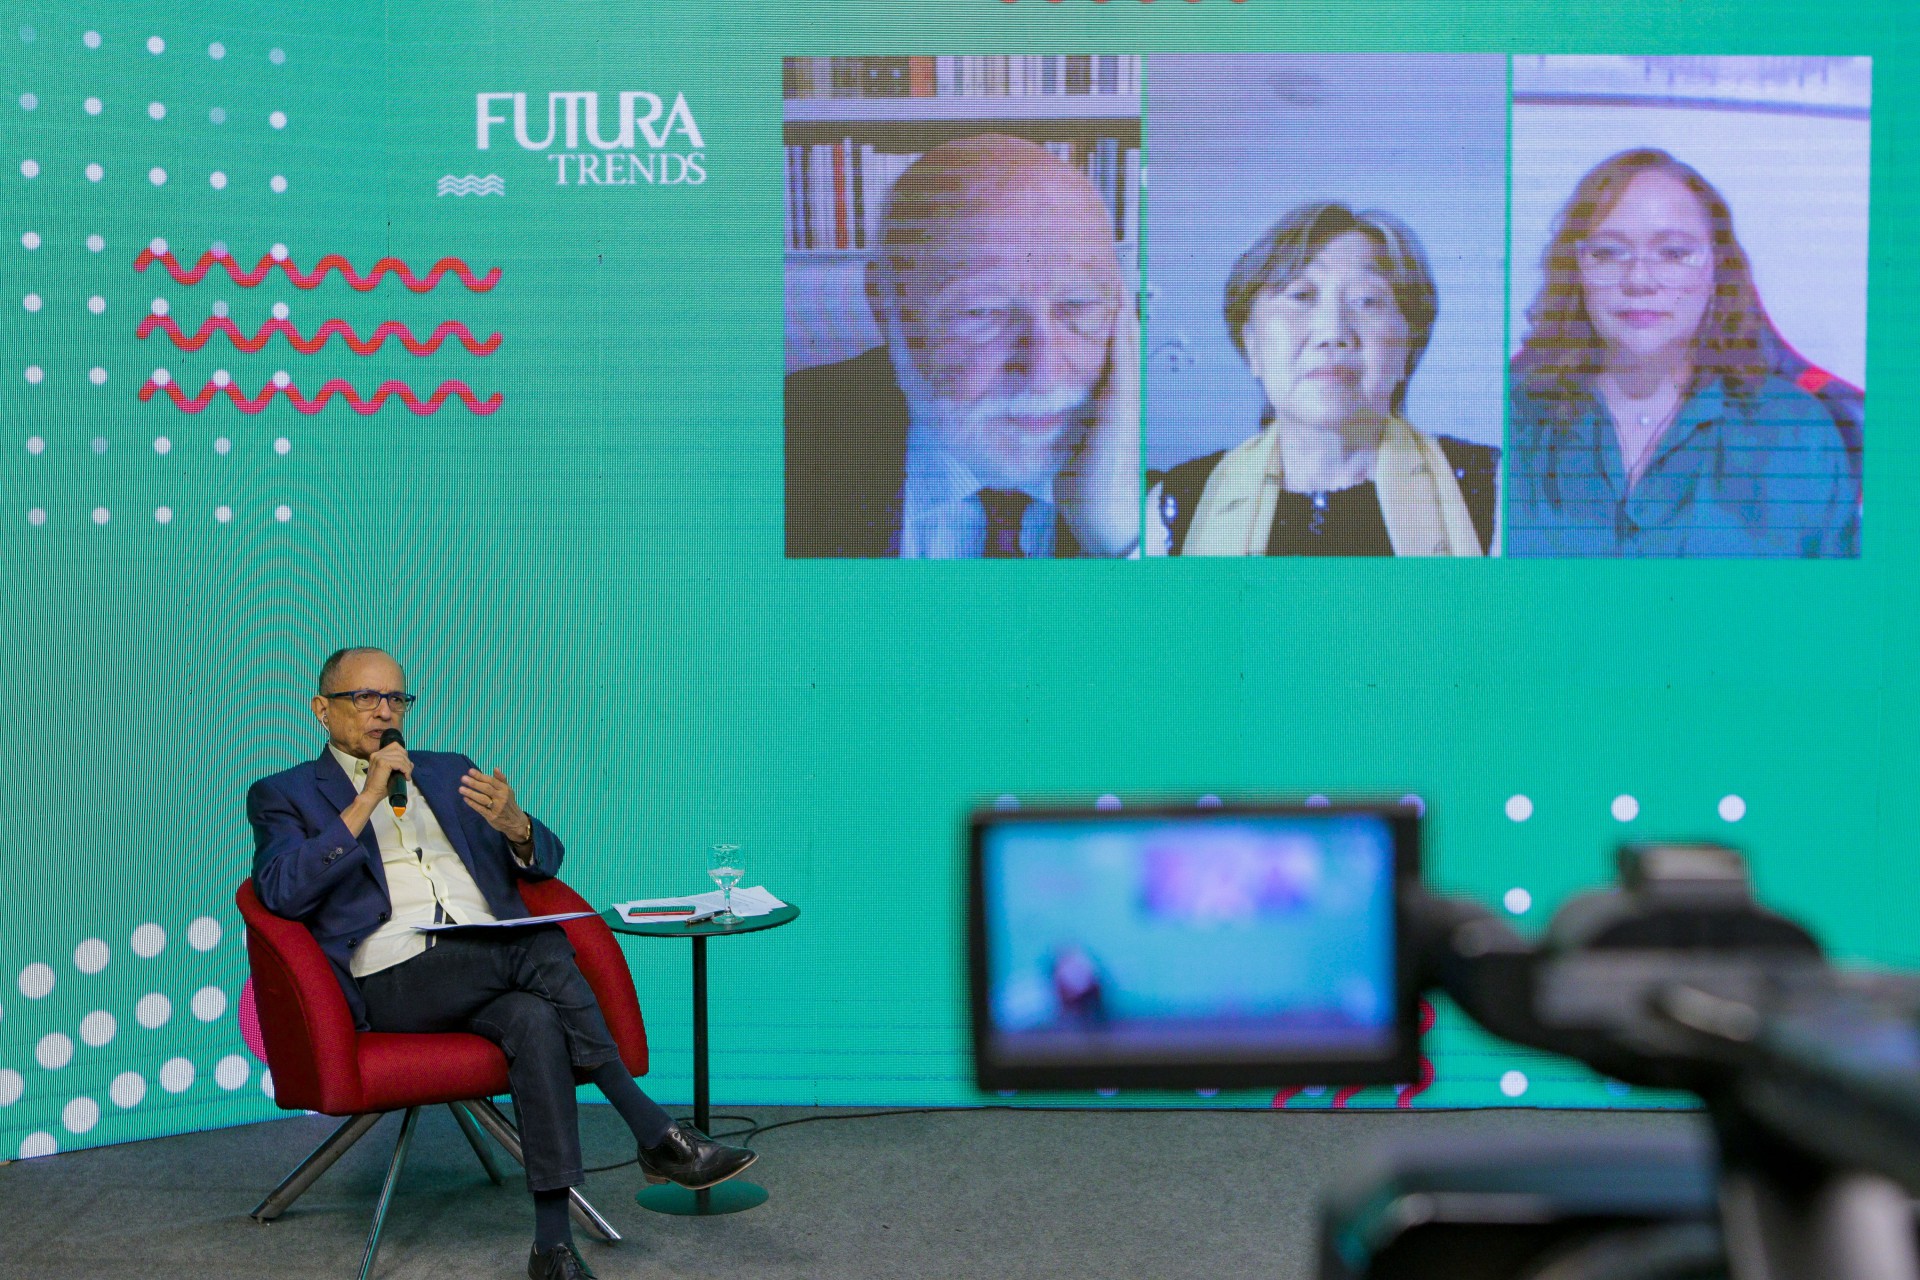 Transmissão do seminário Futura Trends 2020 direto do estúdio da TV O POVO (Foto: FCO FONTENELE)